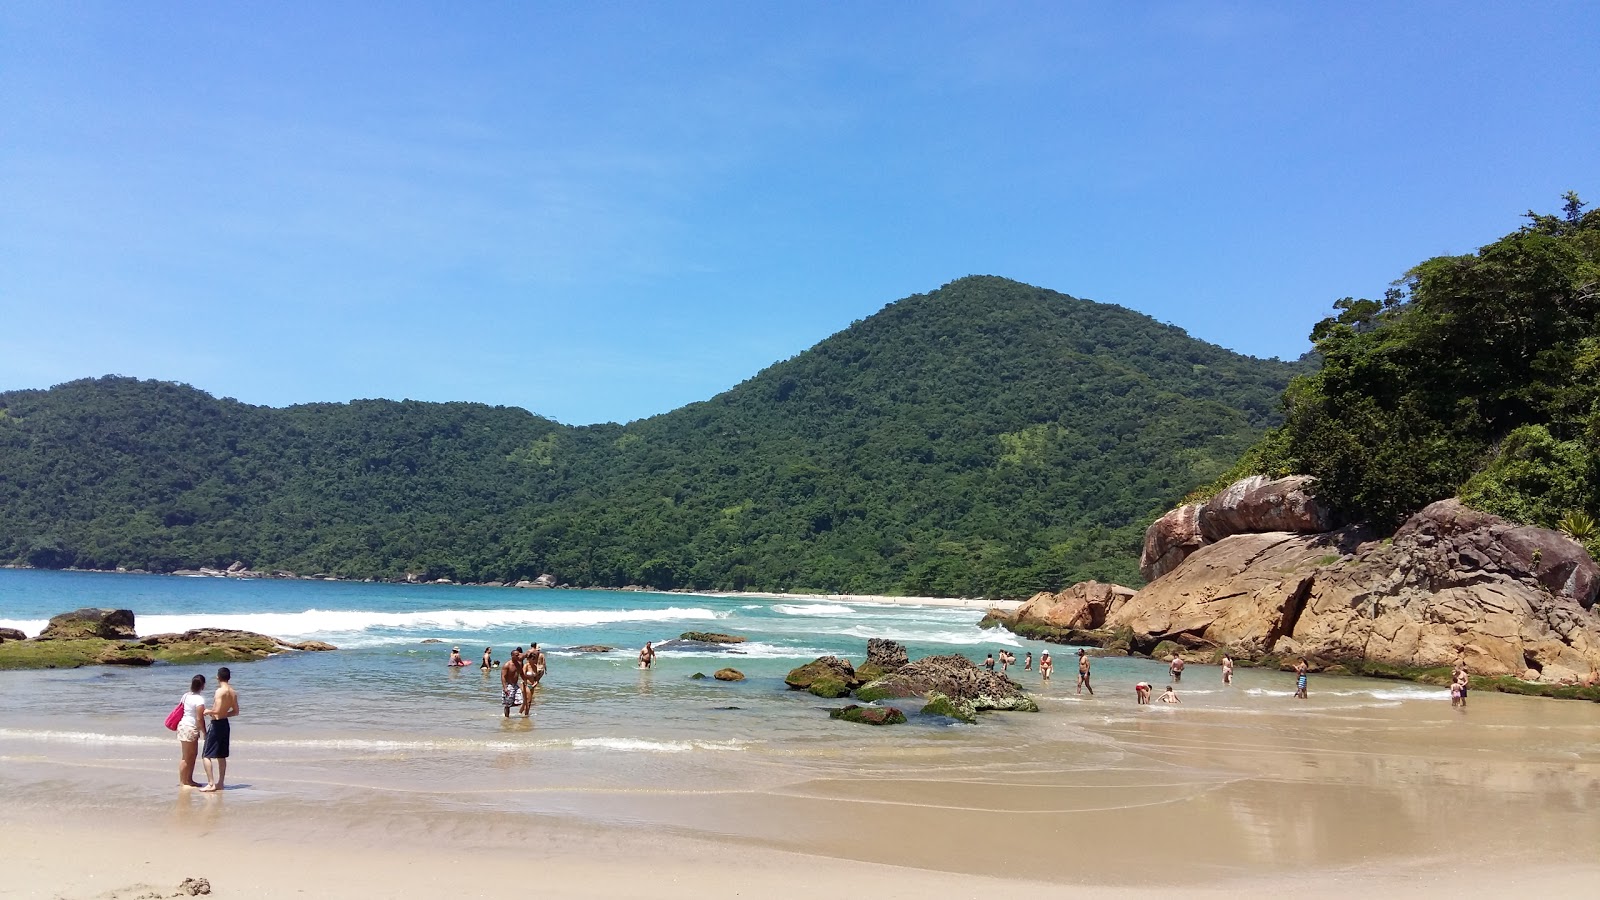 Praia do Meio'in fotoğrafı parlak ince kum yüzey ile